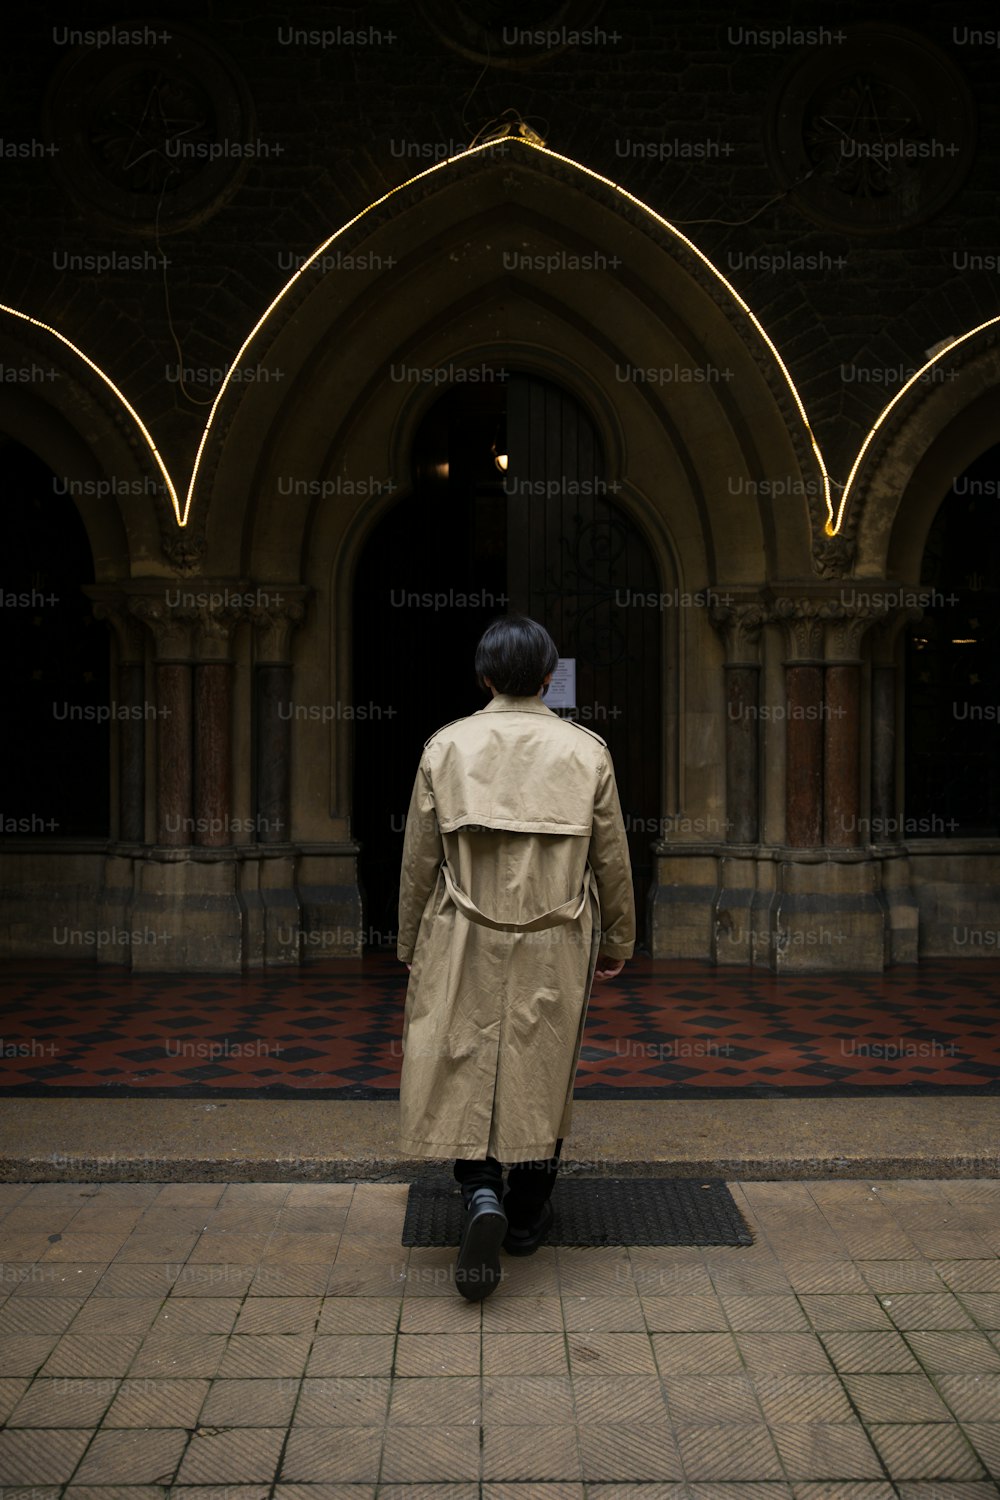 트렌치 코트를 입은 남자가 건물 앞에 서있다